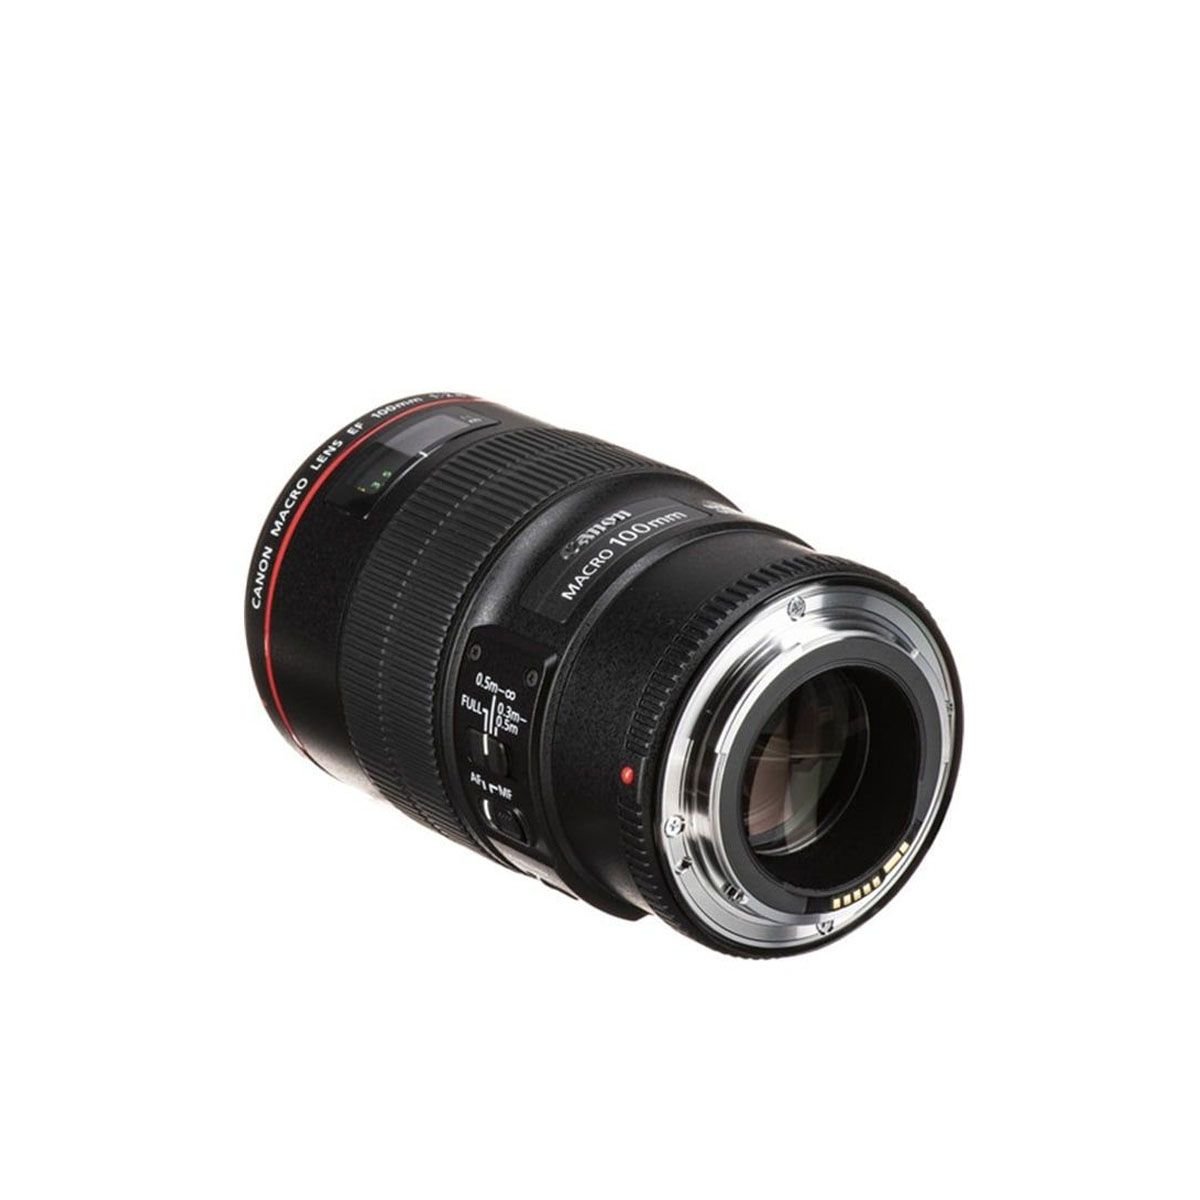  Ống kính Canon EF 100mm f2.8L Macro IS USM - Lê Bảo Minh 